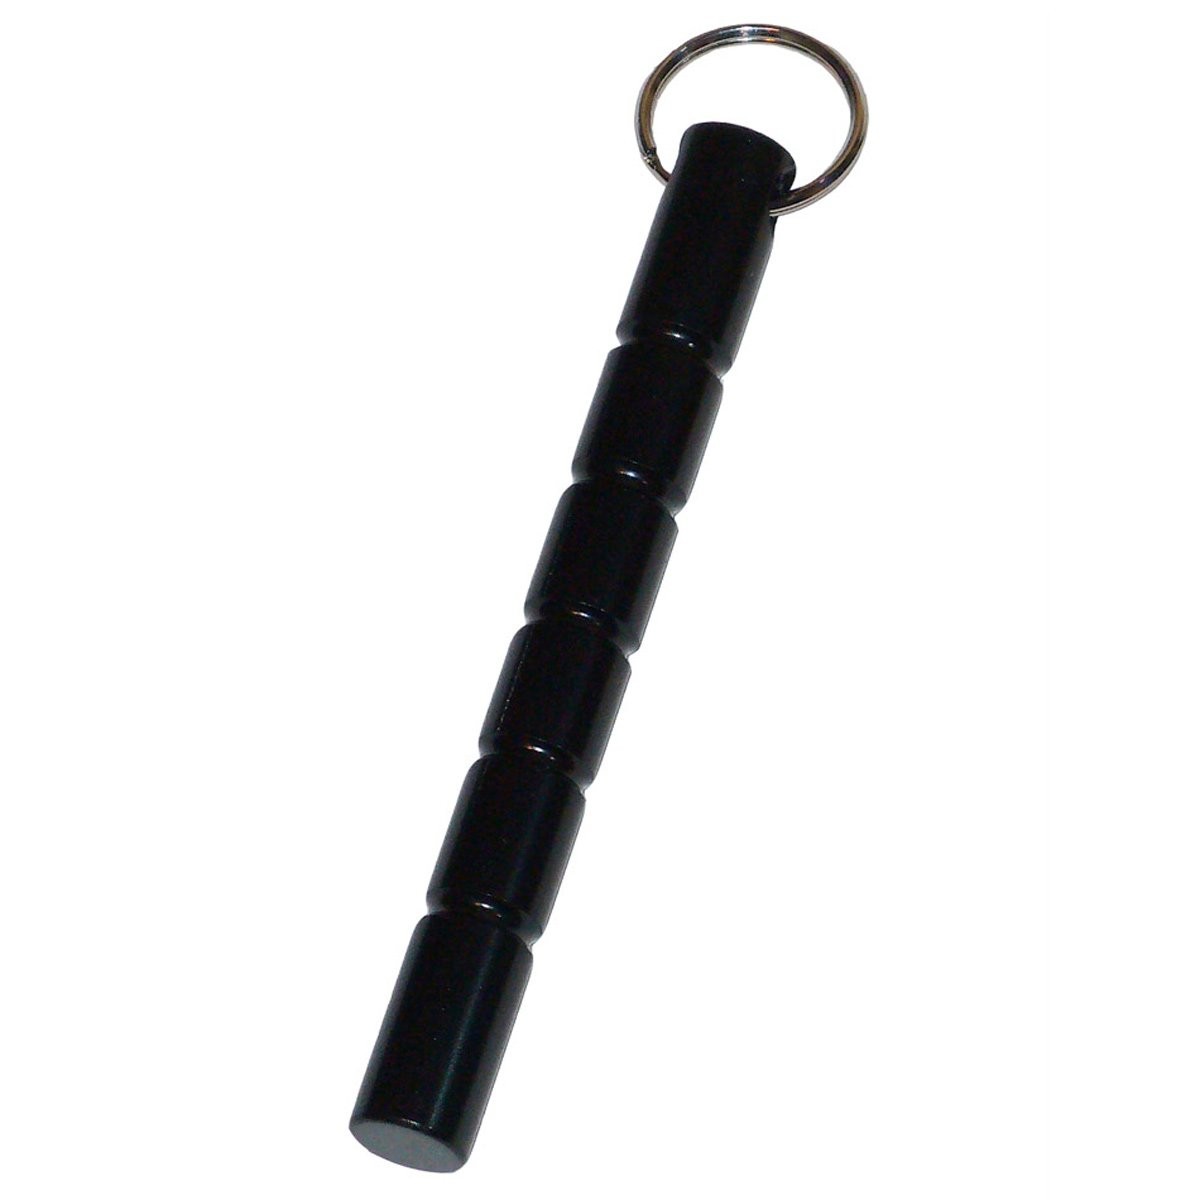 Kubotan Schlüsselanhänger (Stumpf) von Markenlos